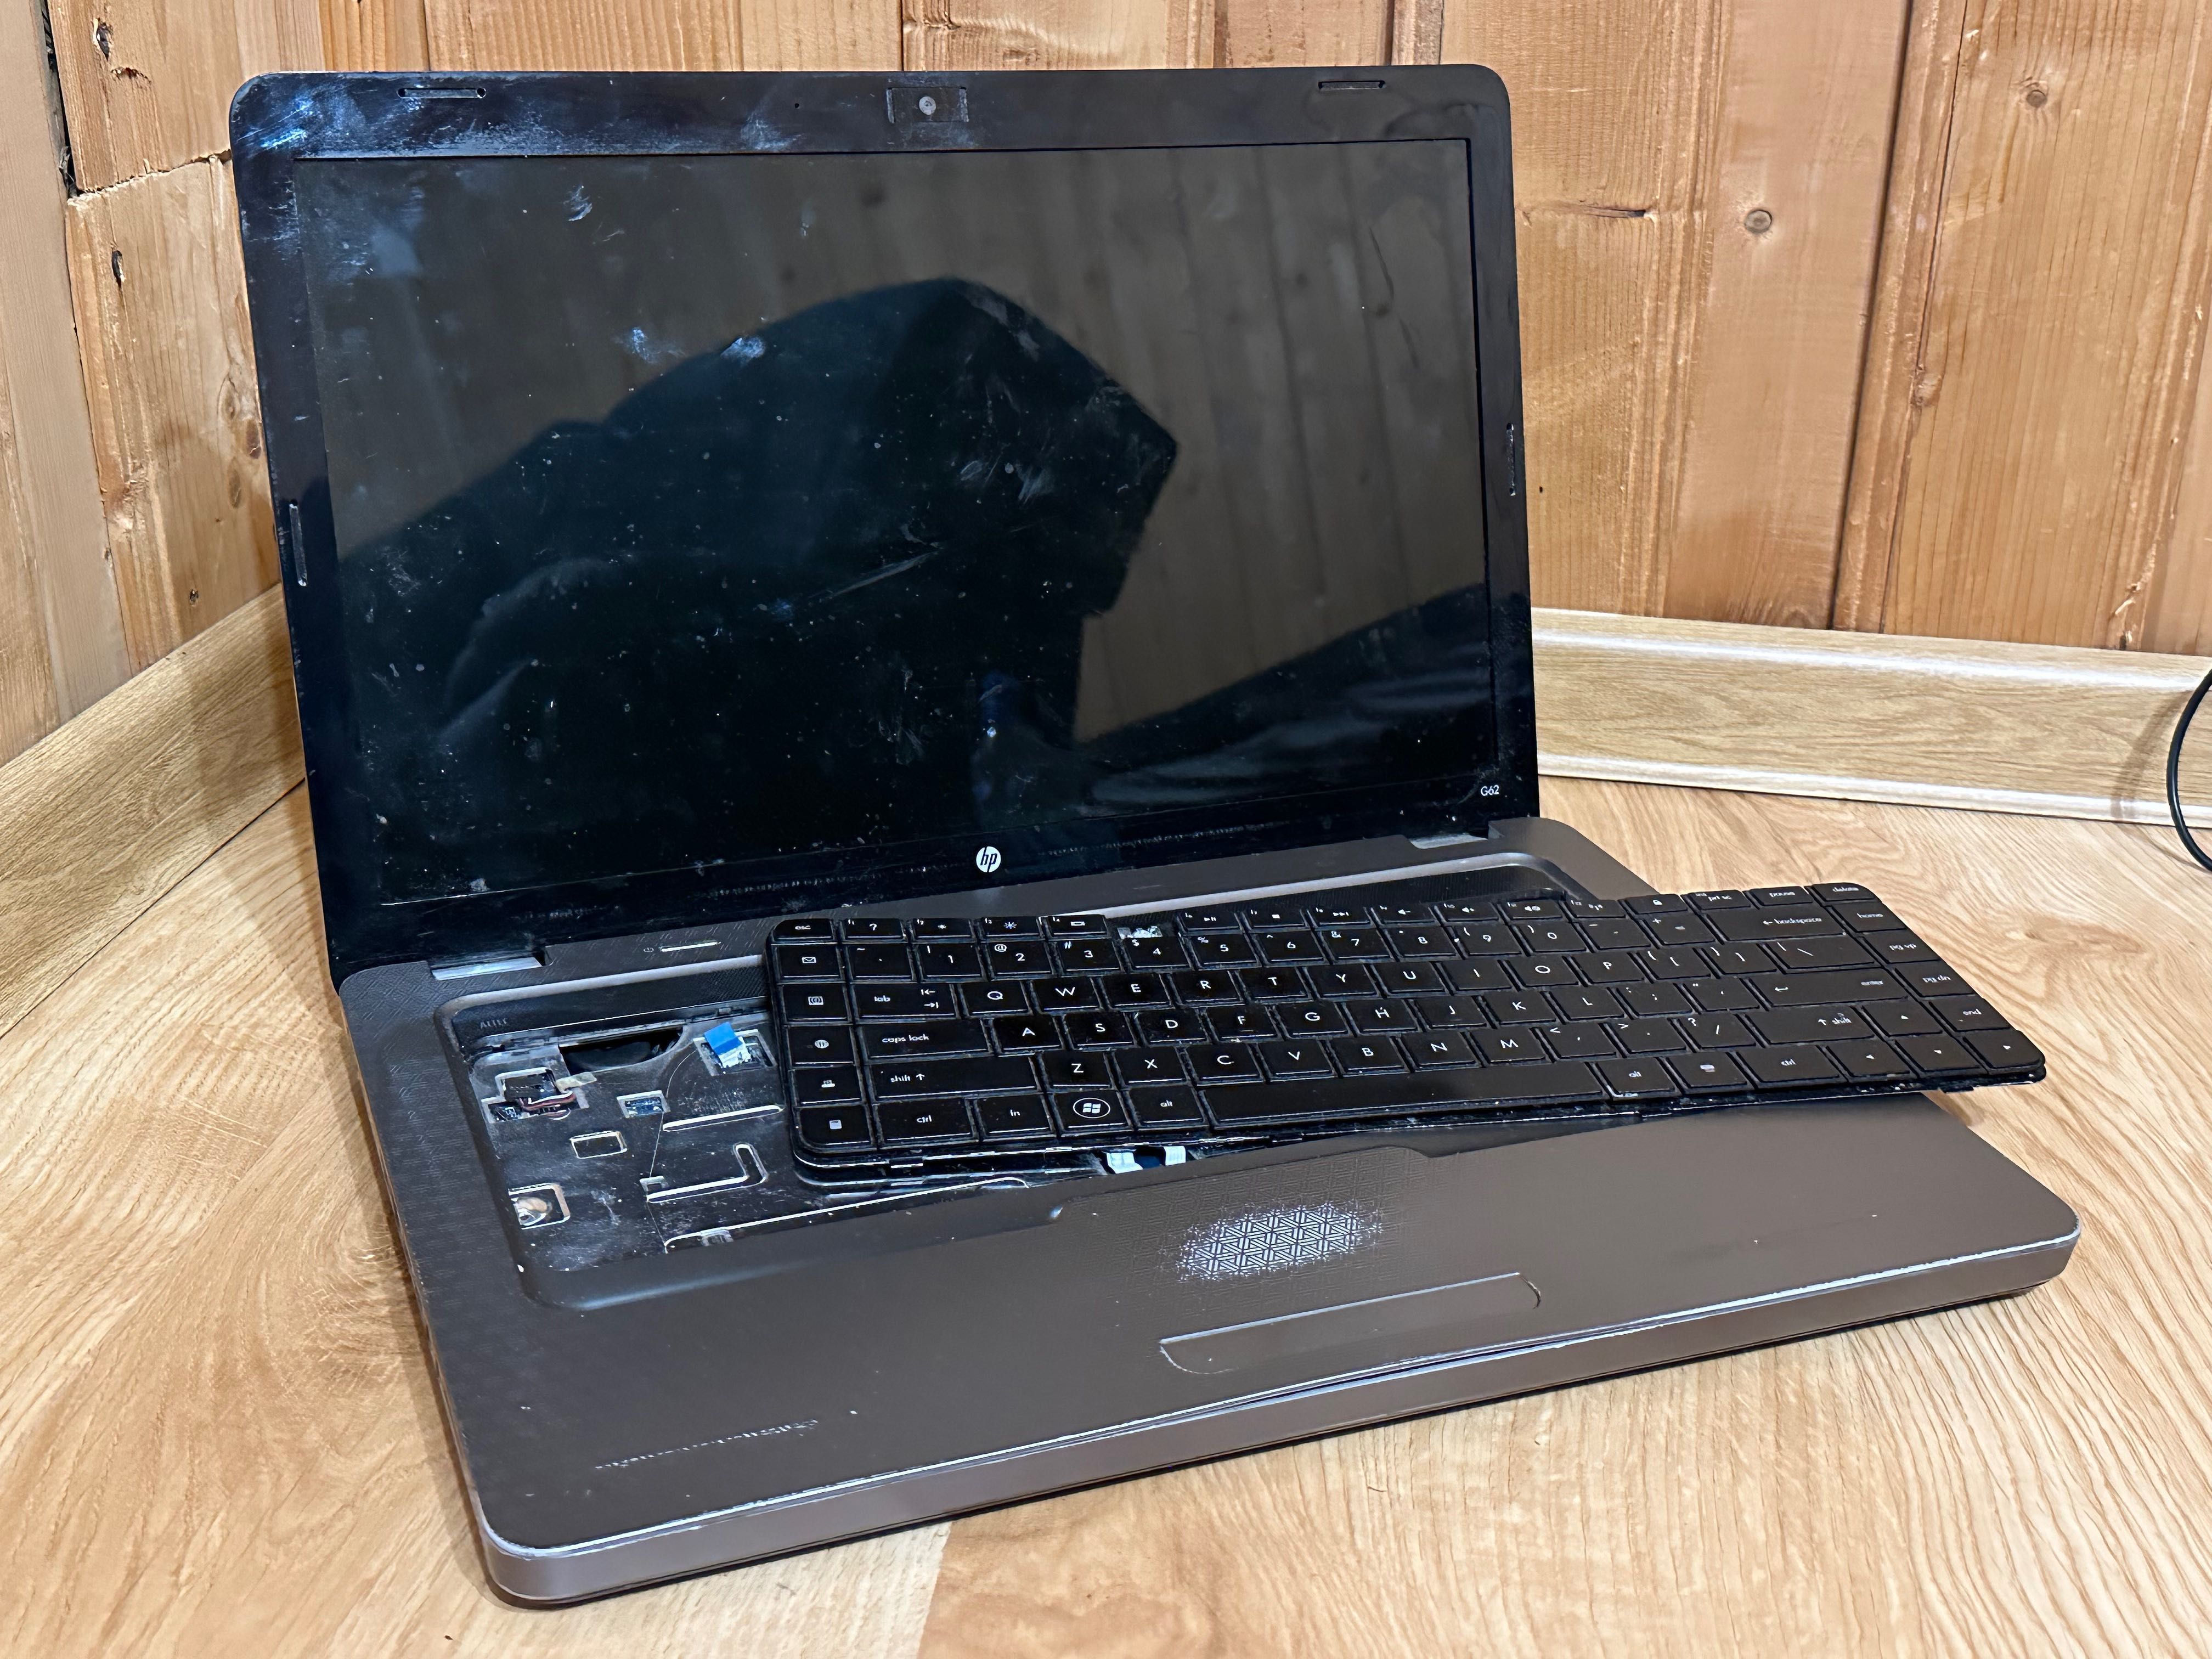 Laptop HP G62 - uszkodzony i niekompletny, na części